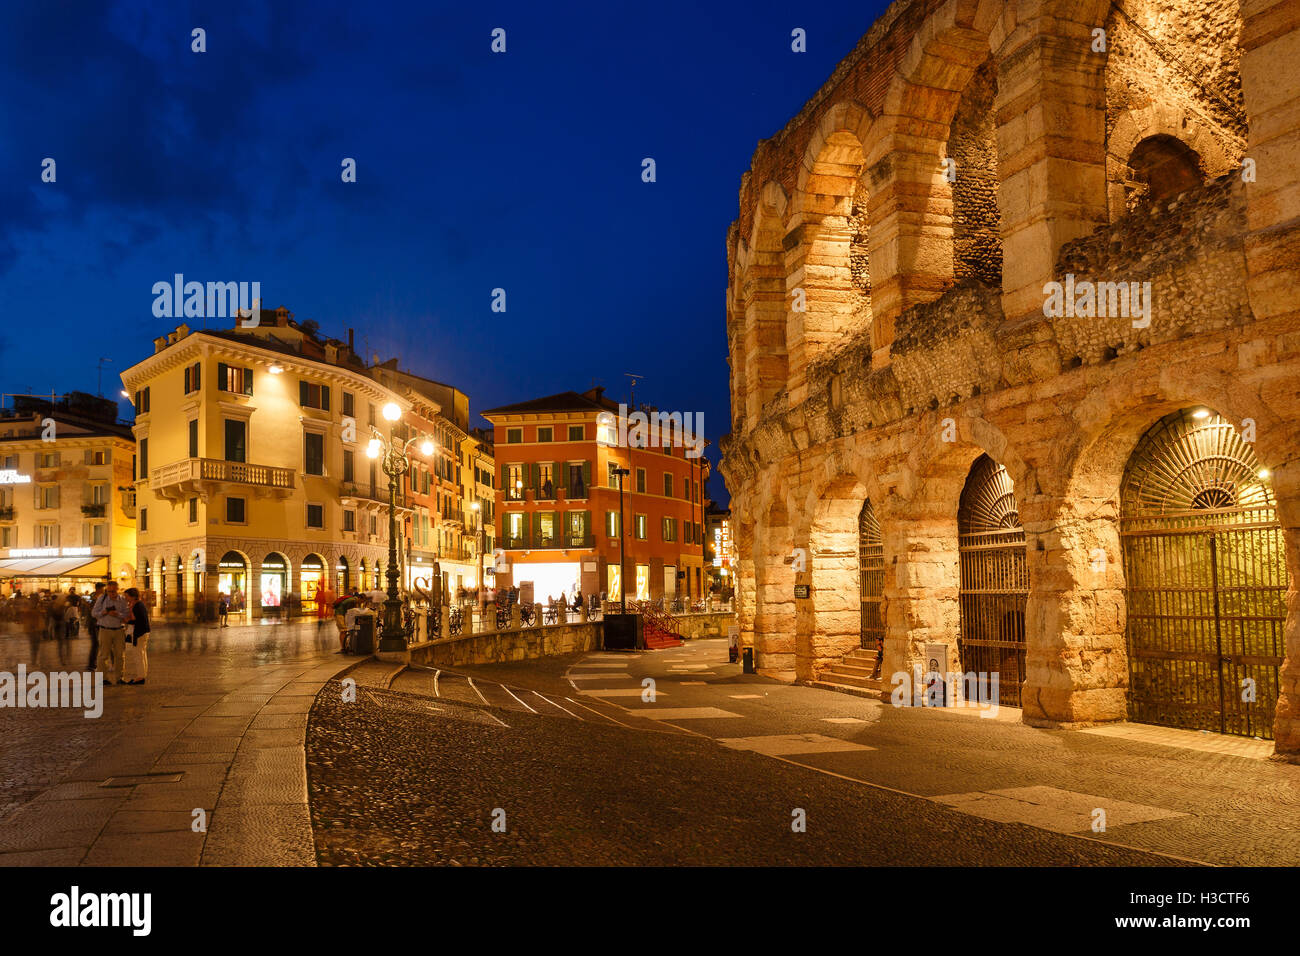 La plaza Bra cerca de la Arena de Verona en la ciudad de Verona, Italia Foto de stock